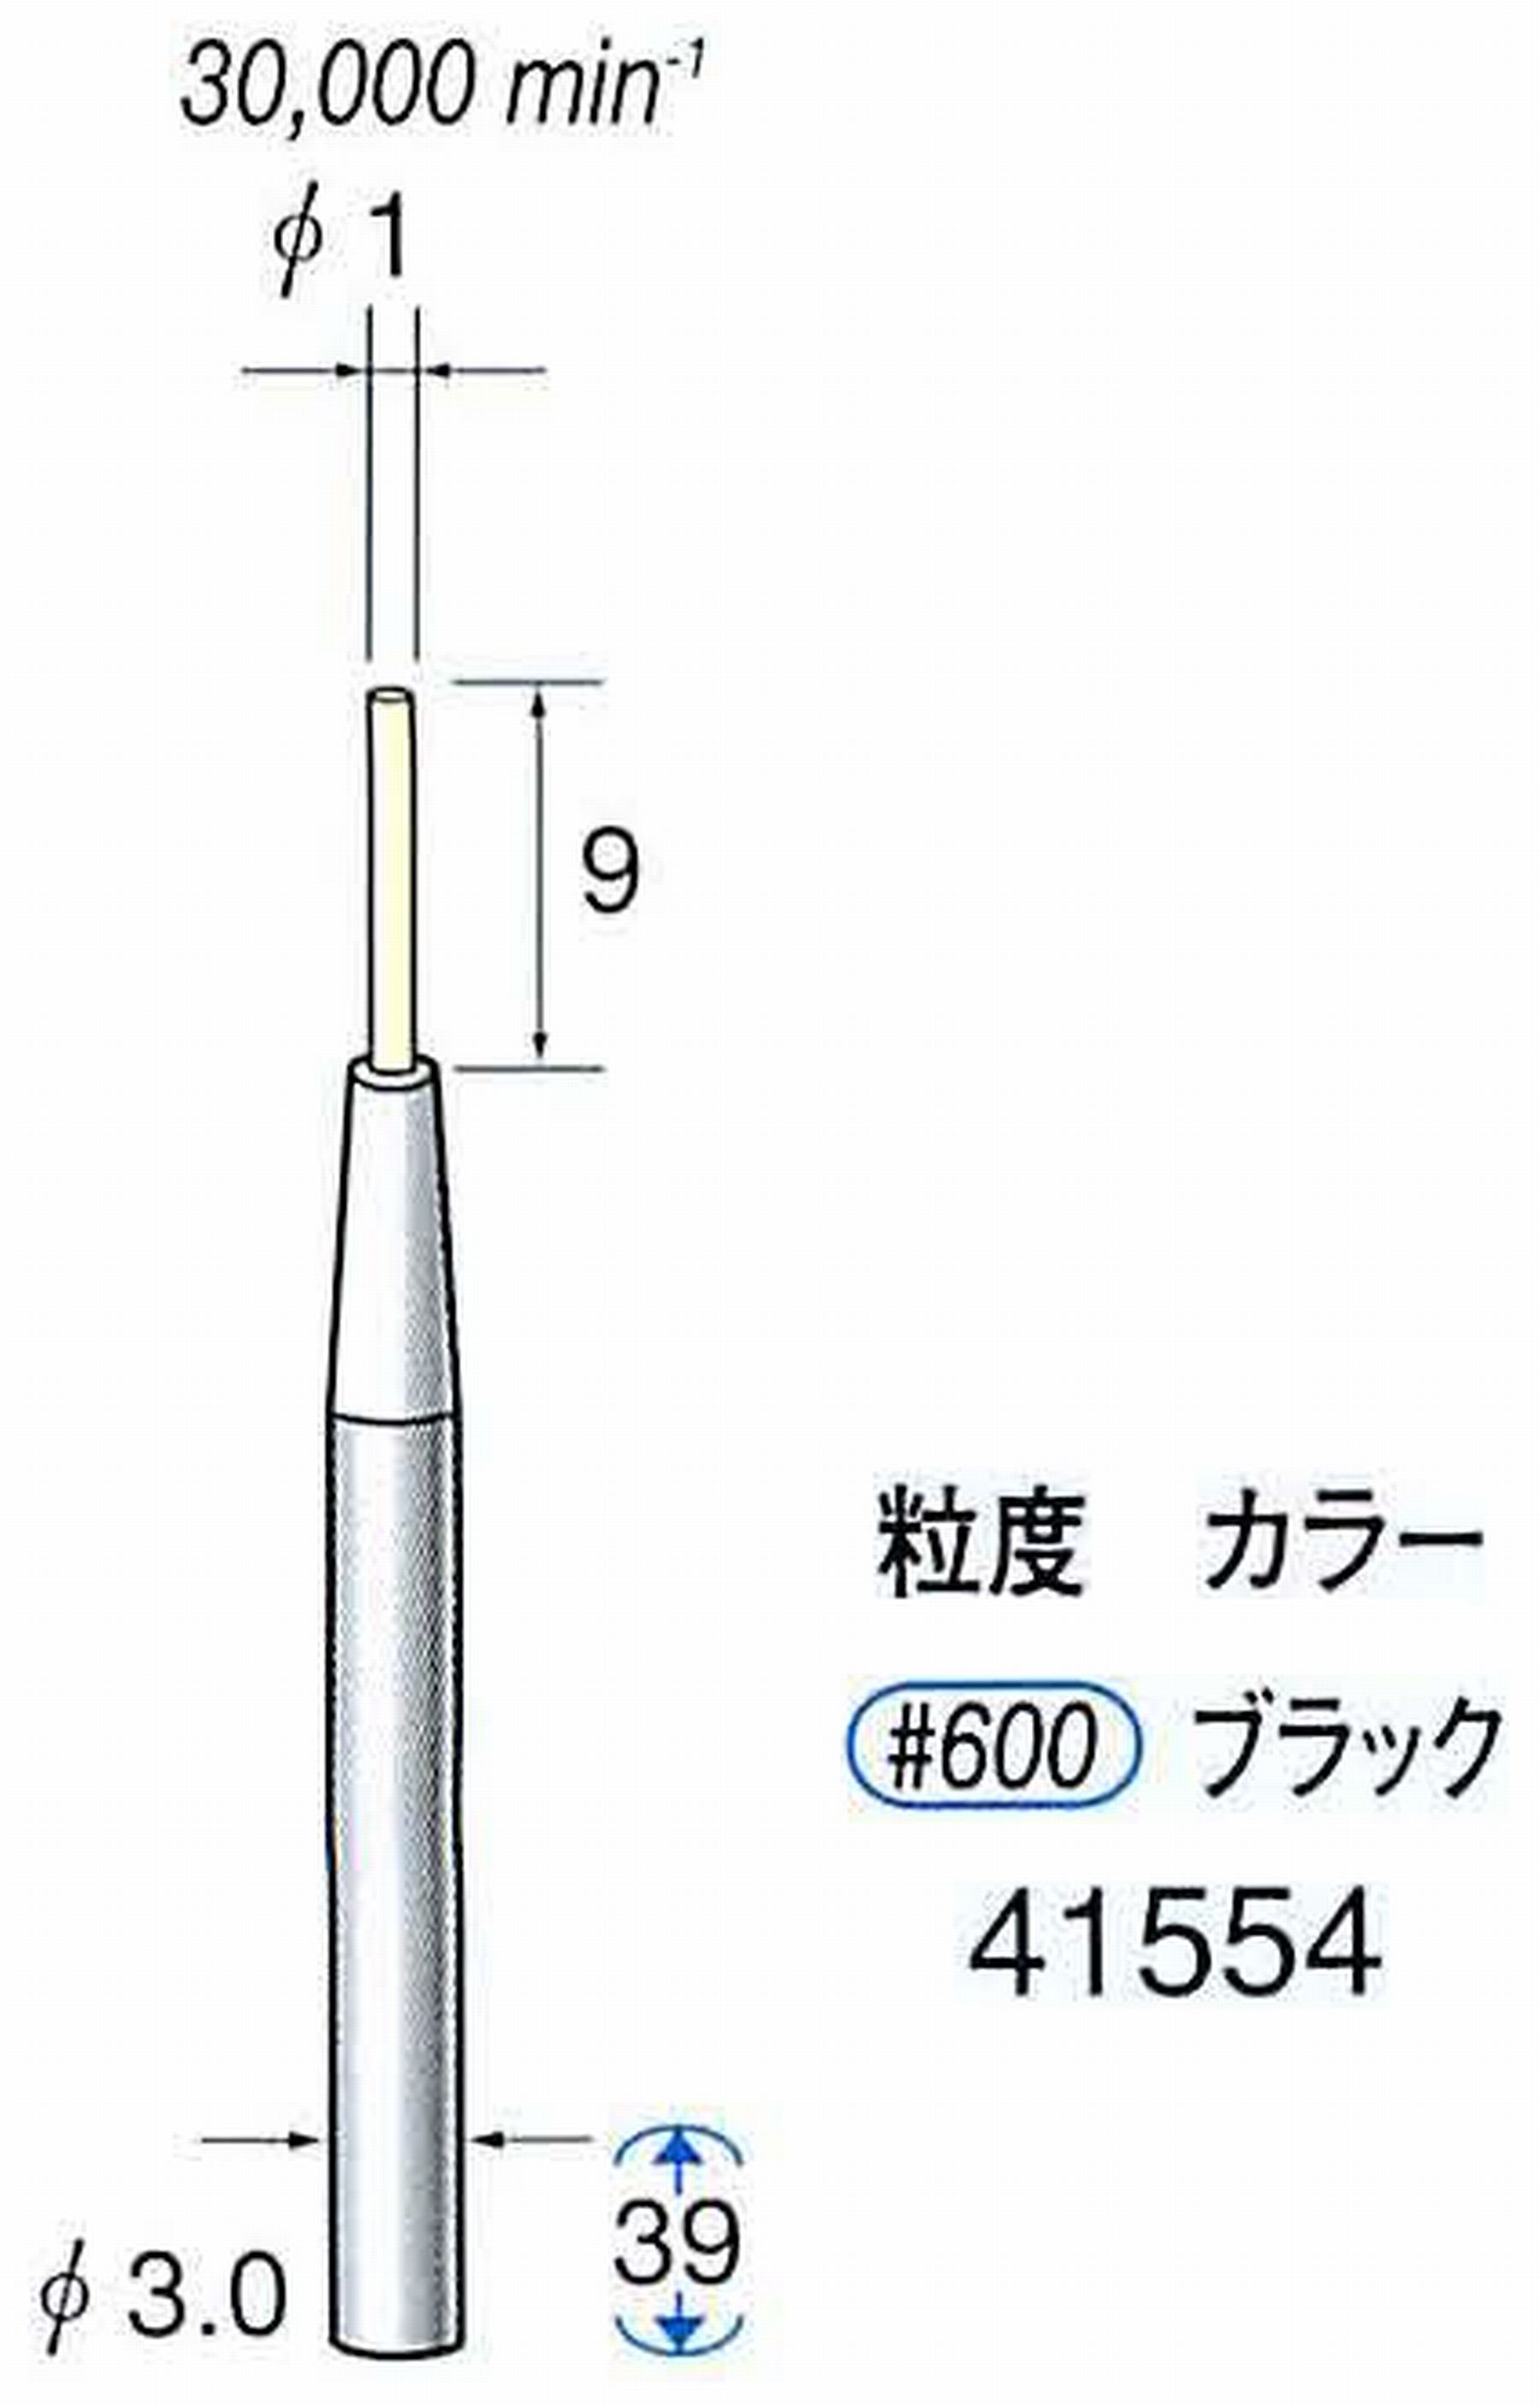 ナカニシ/NAKANISHI セラファイバー精密軸付砥石(カラー ブラック) 軸径(シャンク) φ3.0mm 41554